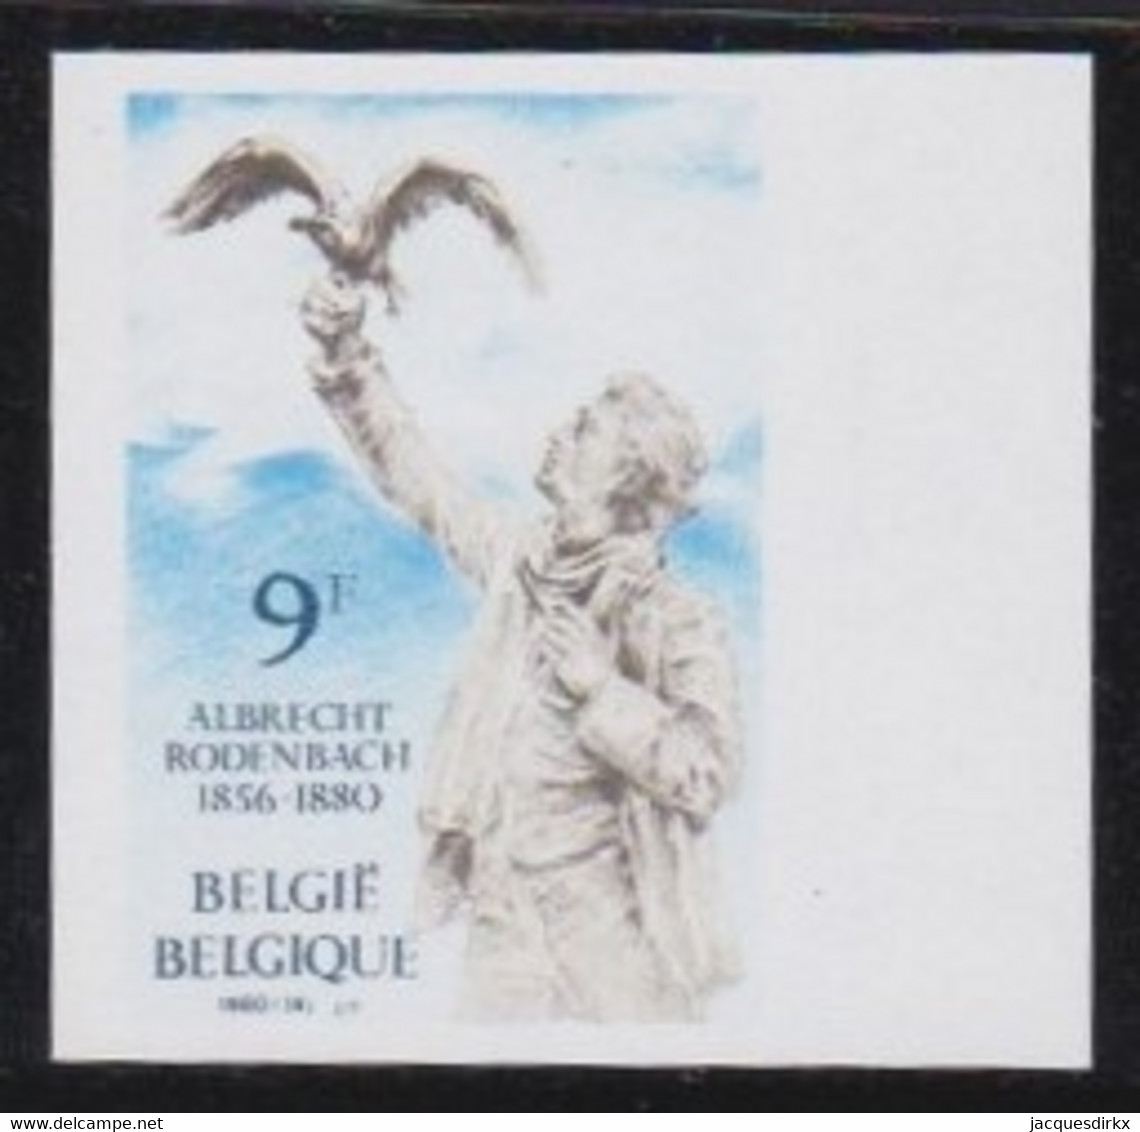 Belgie   .  OBP  .     1993       .    Ongetand / Non-dentelé    ,    **  .   Postfris  .   /   Neuf SANS Charnière - Unused Stamps